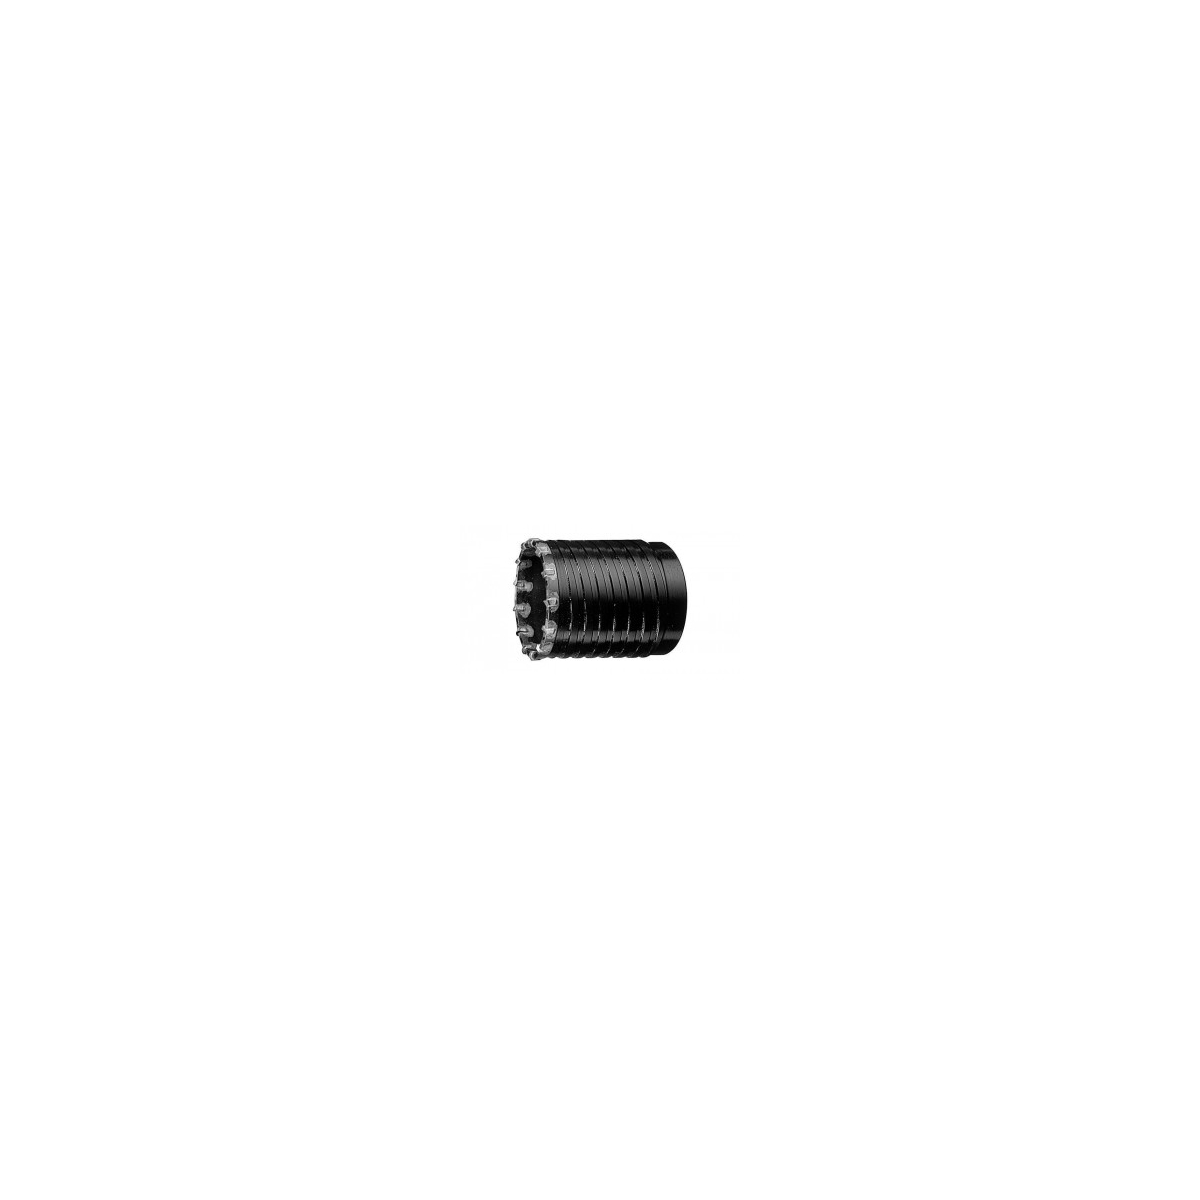 Broca de núcleo oco Bosch SDS-MAX 100mm 1618550084 - Compre brocas de núcleo Bosch a preços excelentes.